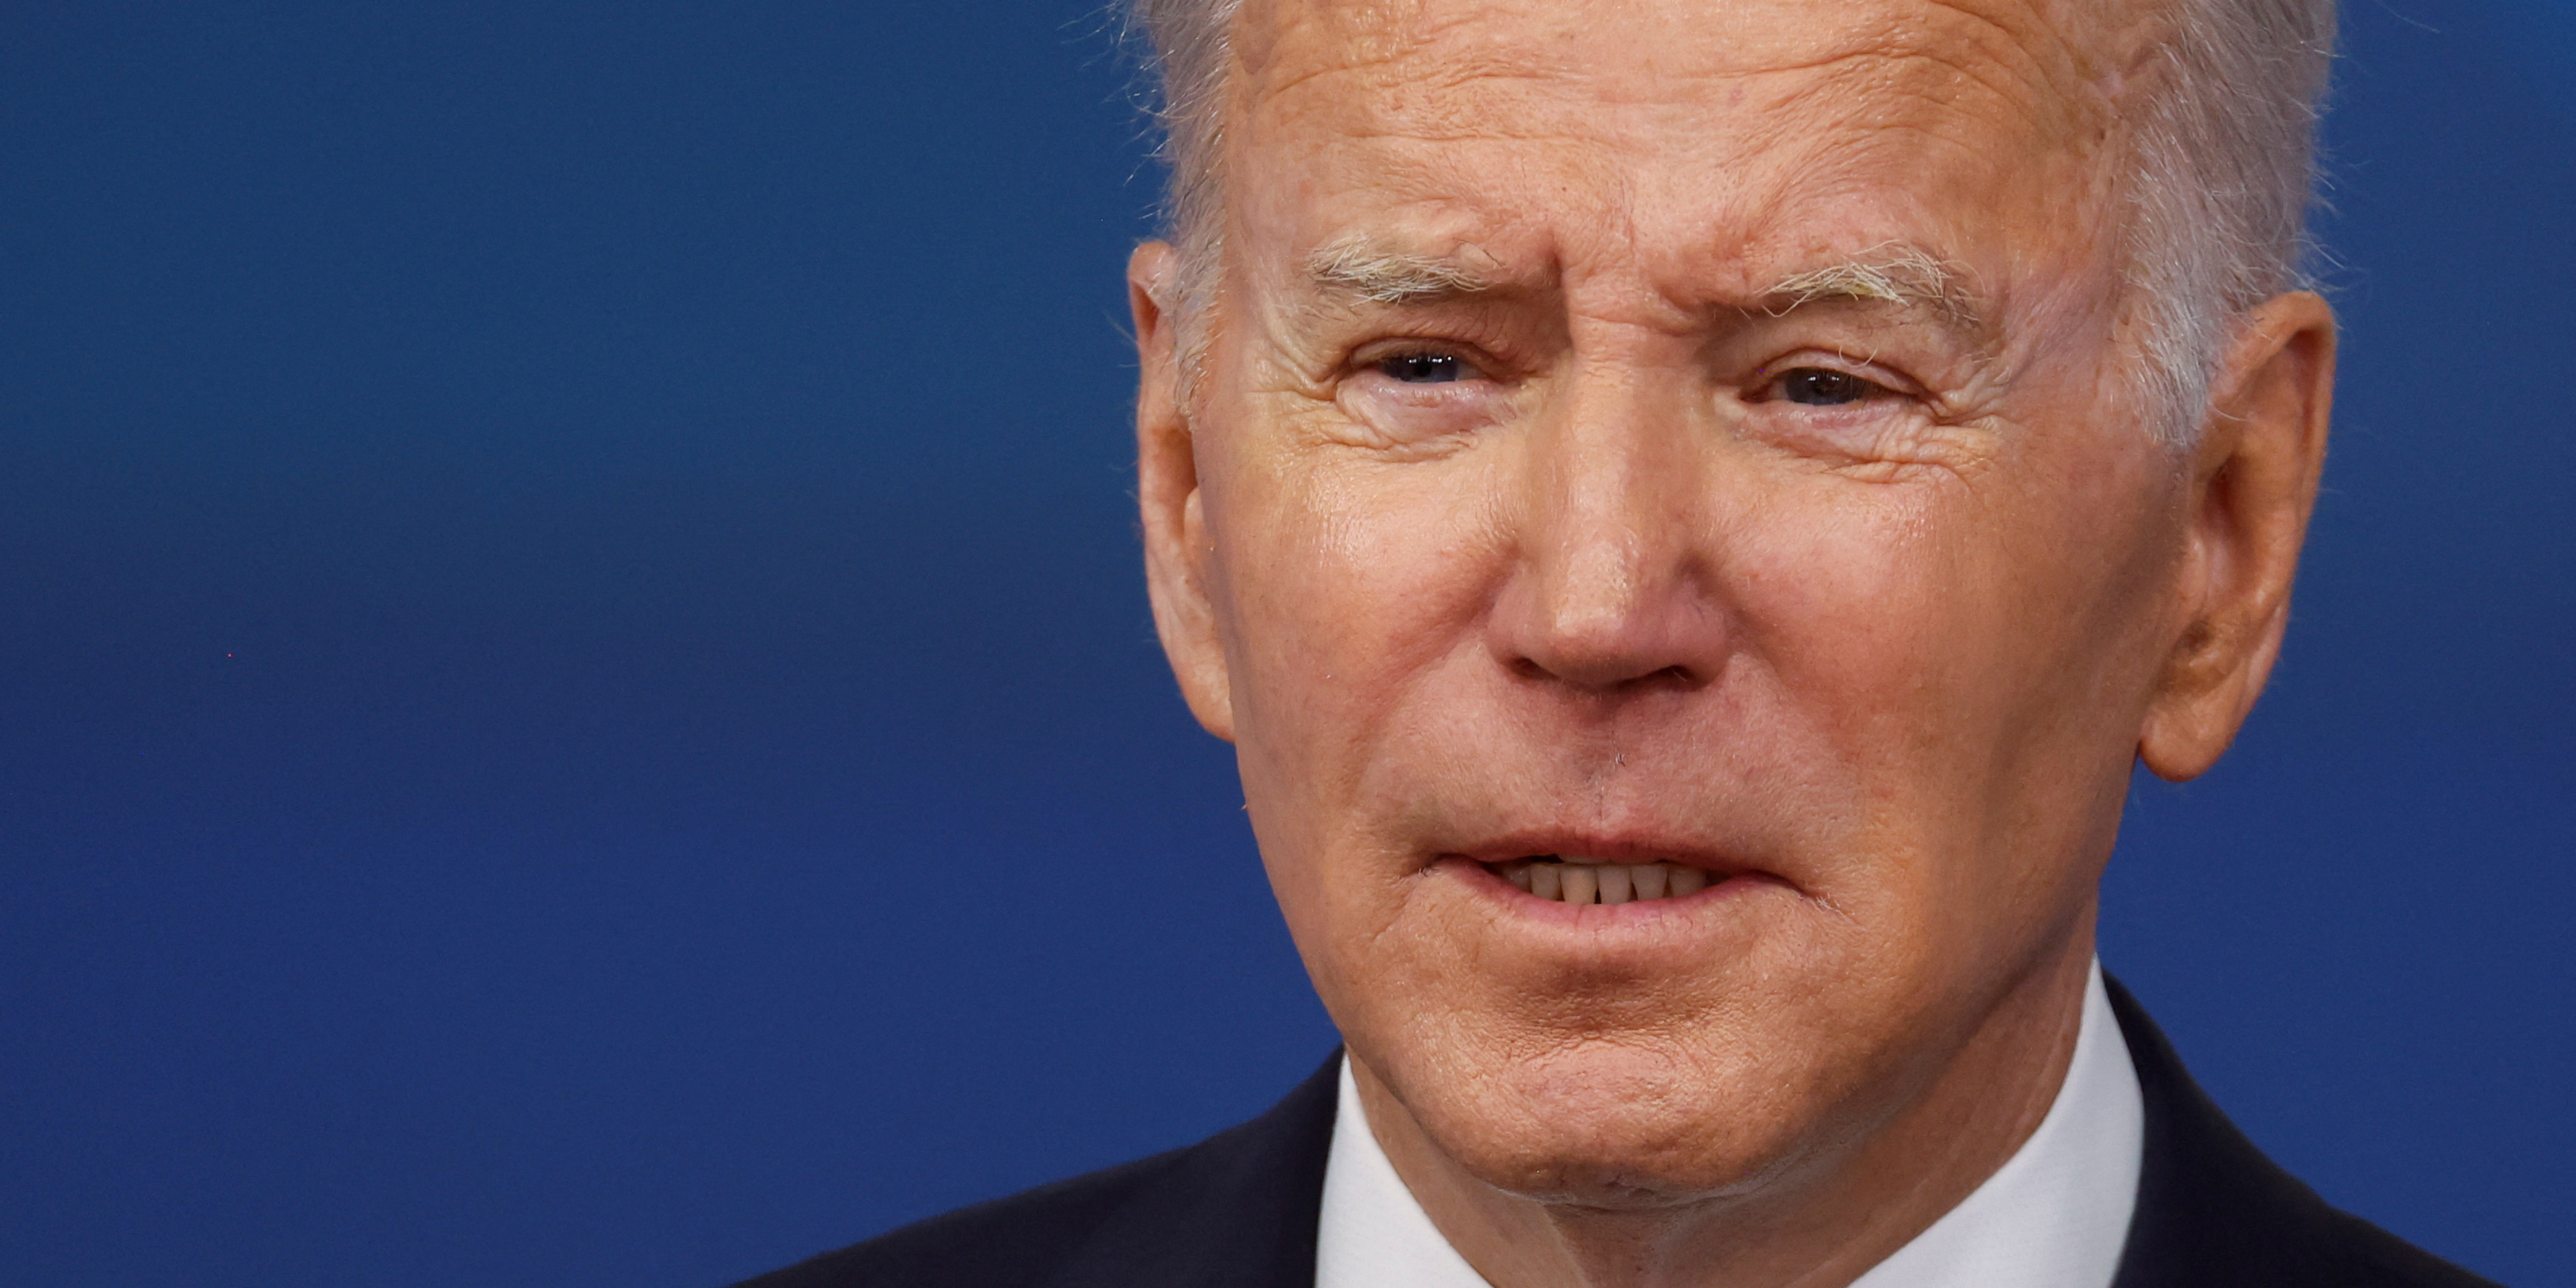 Les propos de Joe Biden sur Xi Jinping soufflent sur les braises entre les États-Unis et Chine